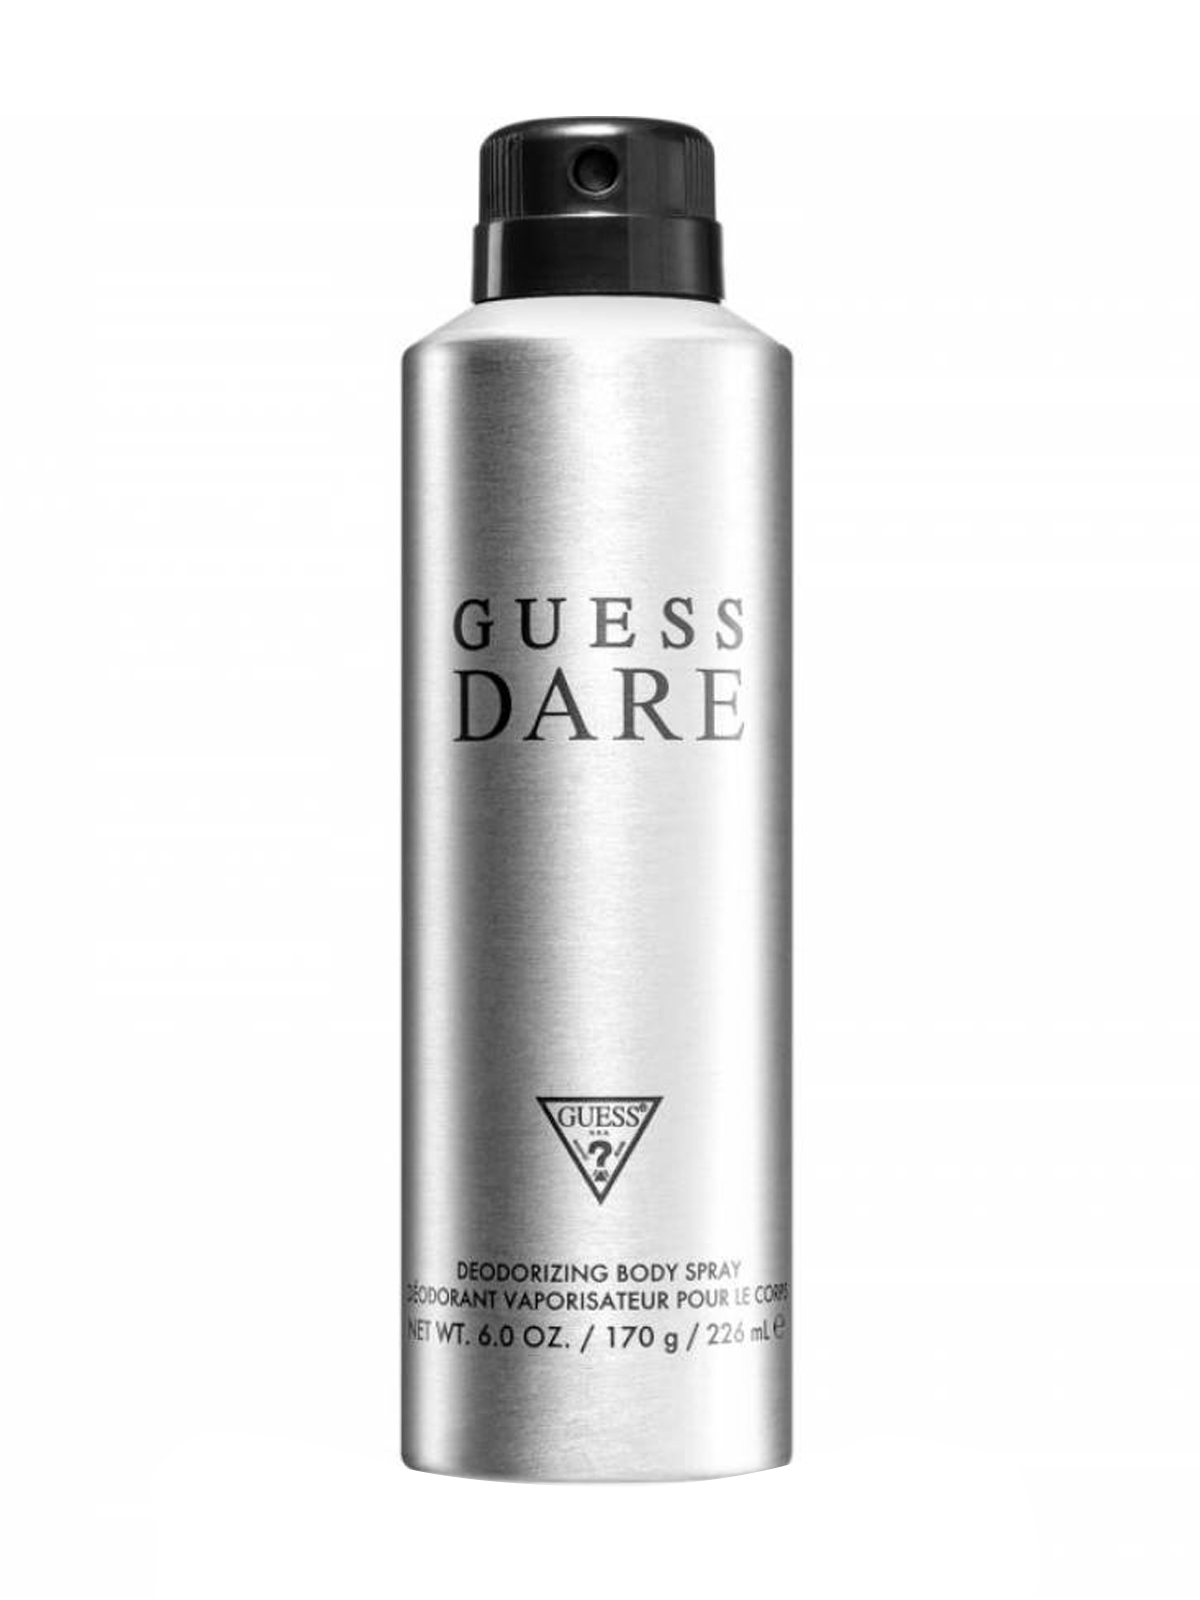 Guess Dare For Men - deodorant ve spreji 226 ml